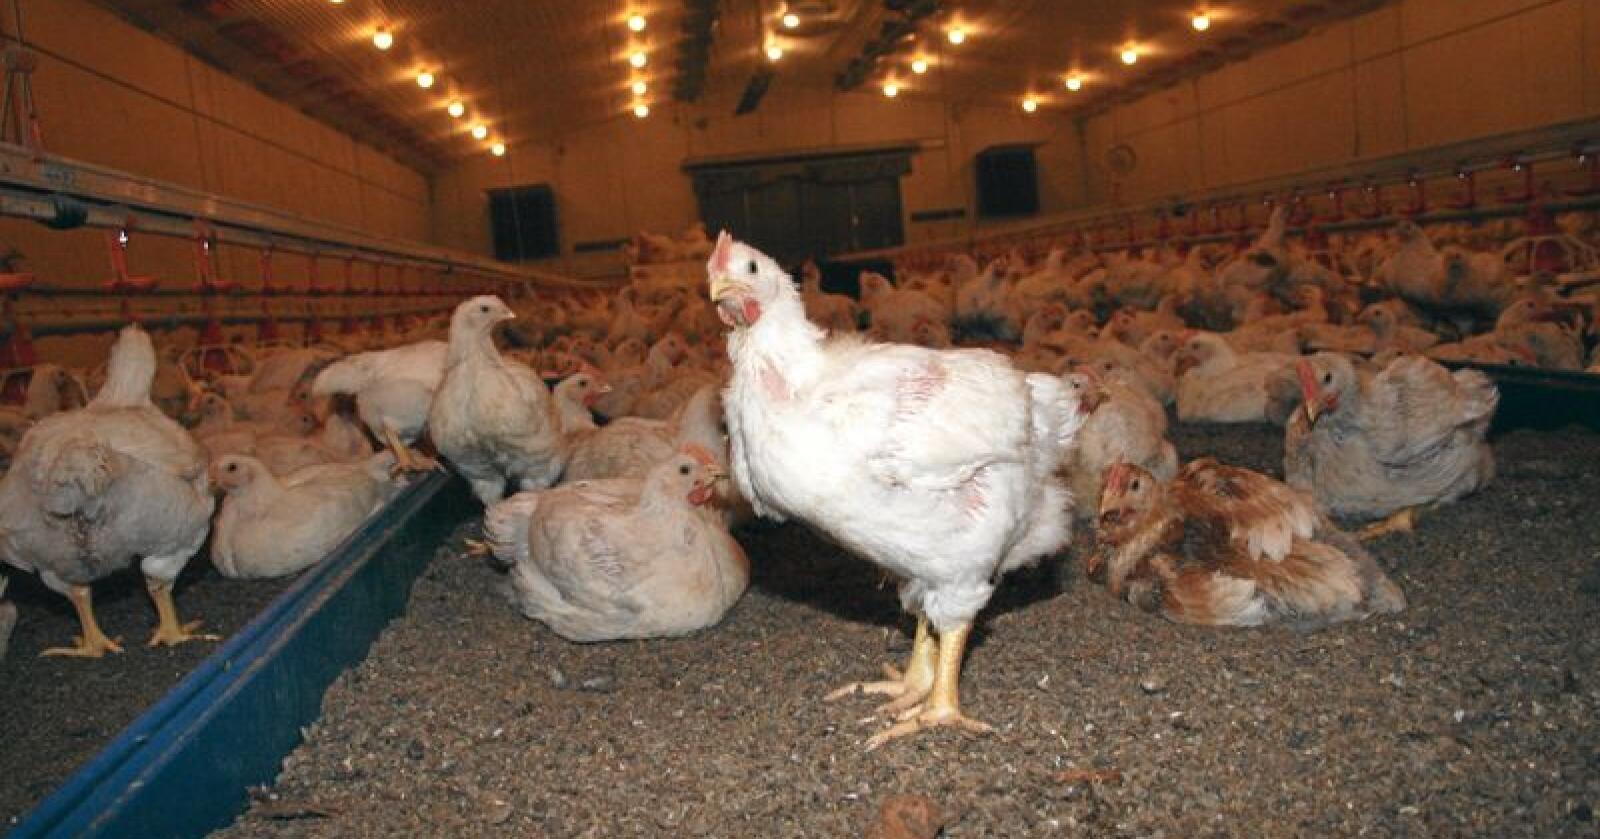 Forskjellar: Meir eksklusive, sakteveksande og utegåande kyllingvariantar har større risiko for å bli smitta av campylobacter-bakteriar enn konvensjonell kylling, ifølgje fagfolk, som nå testar ut kor store forskjellane er. Foto: Bjarne Bekkeheien Aase